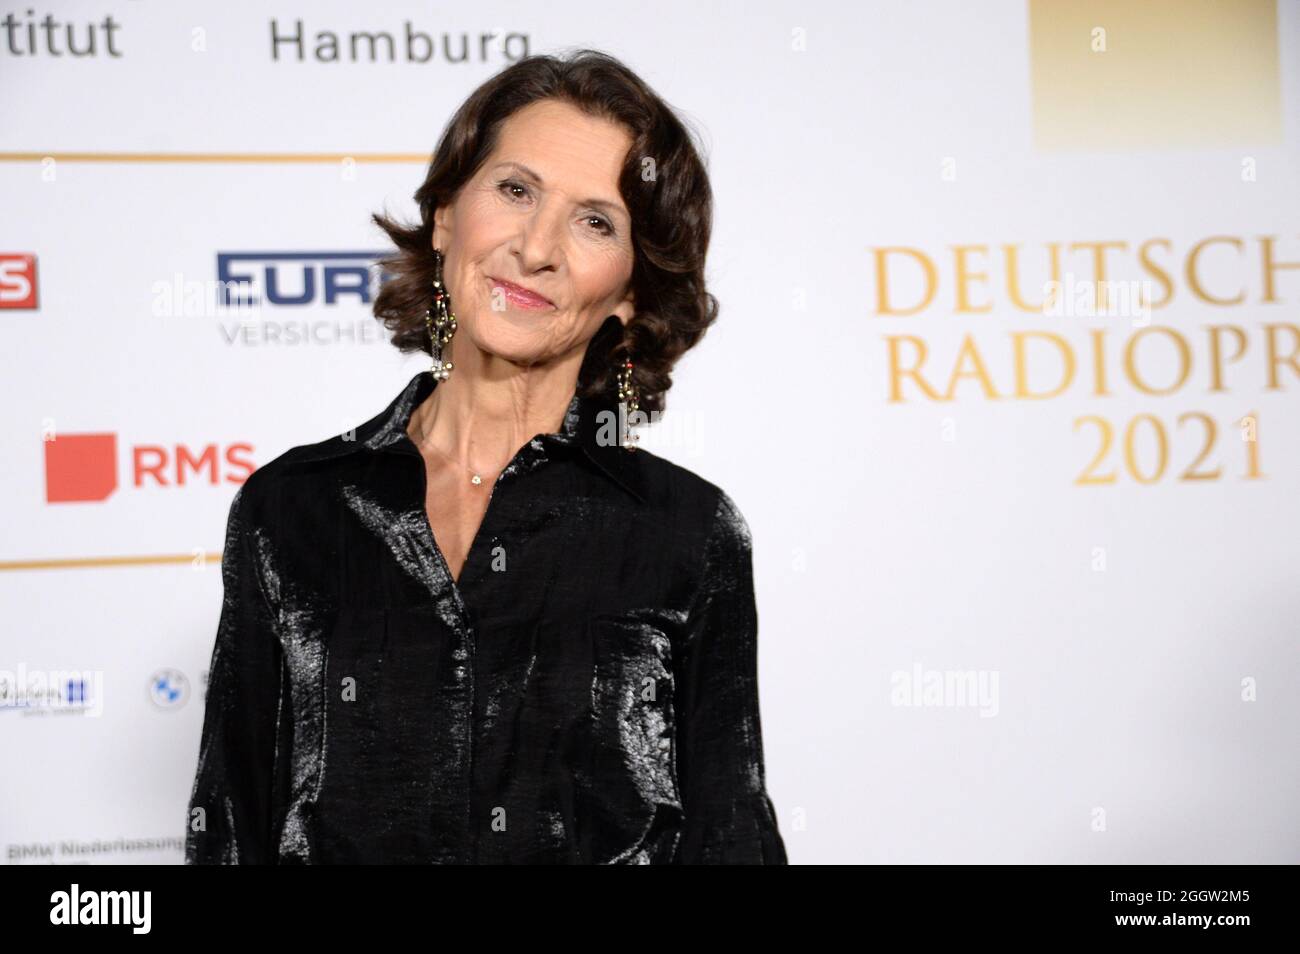 Hamburg der 02.09.2021 - Antonia Rados bei der Verleihung Deutscher Radiopreis 2021 in Hamburg auf dem goldenen Teppich. Die feierliche Gala fand statt Stockfoto